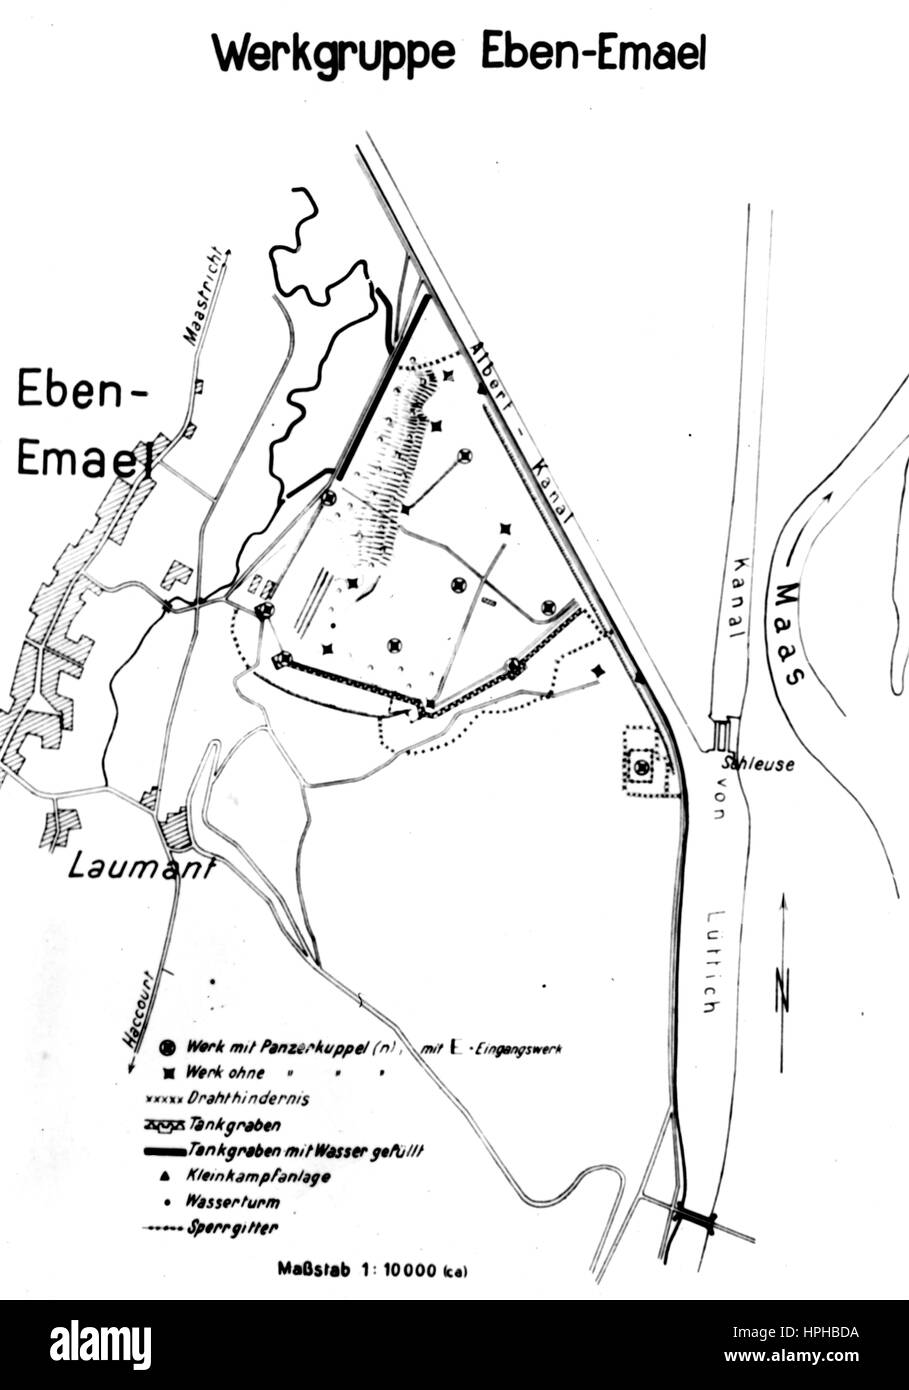 L'image de propagande nazie montre une carte du fort belge Eben-Emael vers 1940. Fotoarchiv für Zeitgeschichte - PAS DE SERVICE DE FIL - | utilisation dans le monde entier Banque D'Images